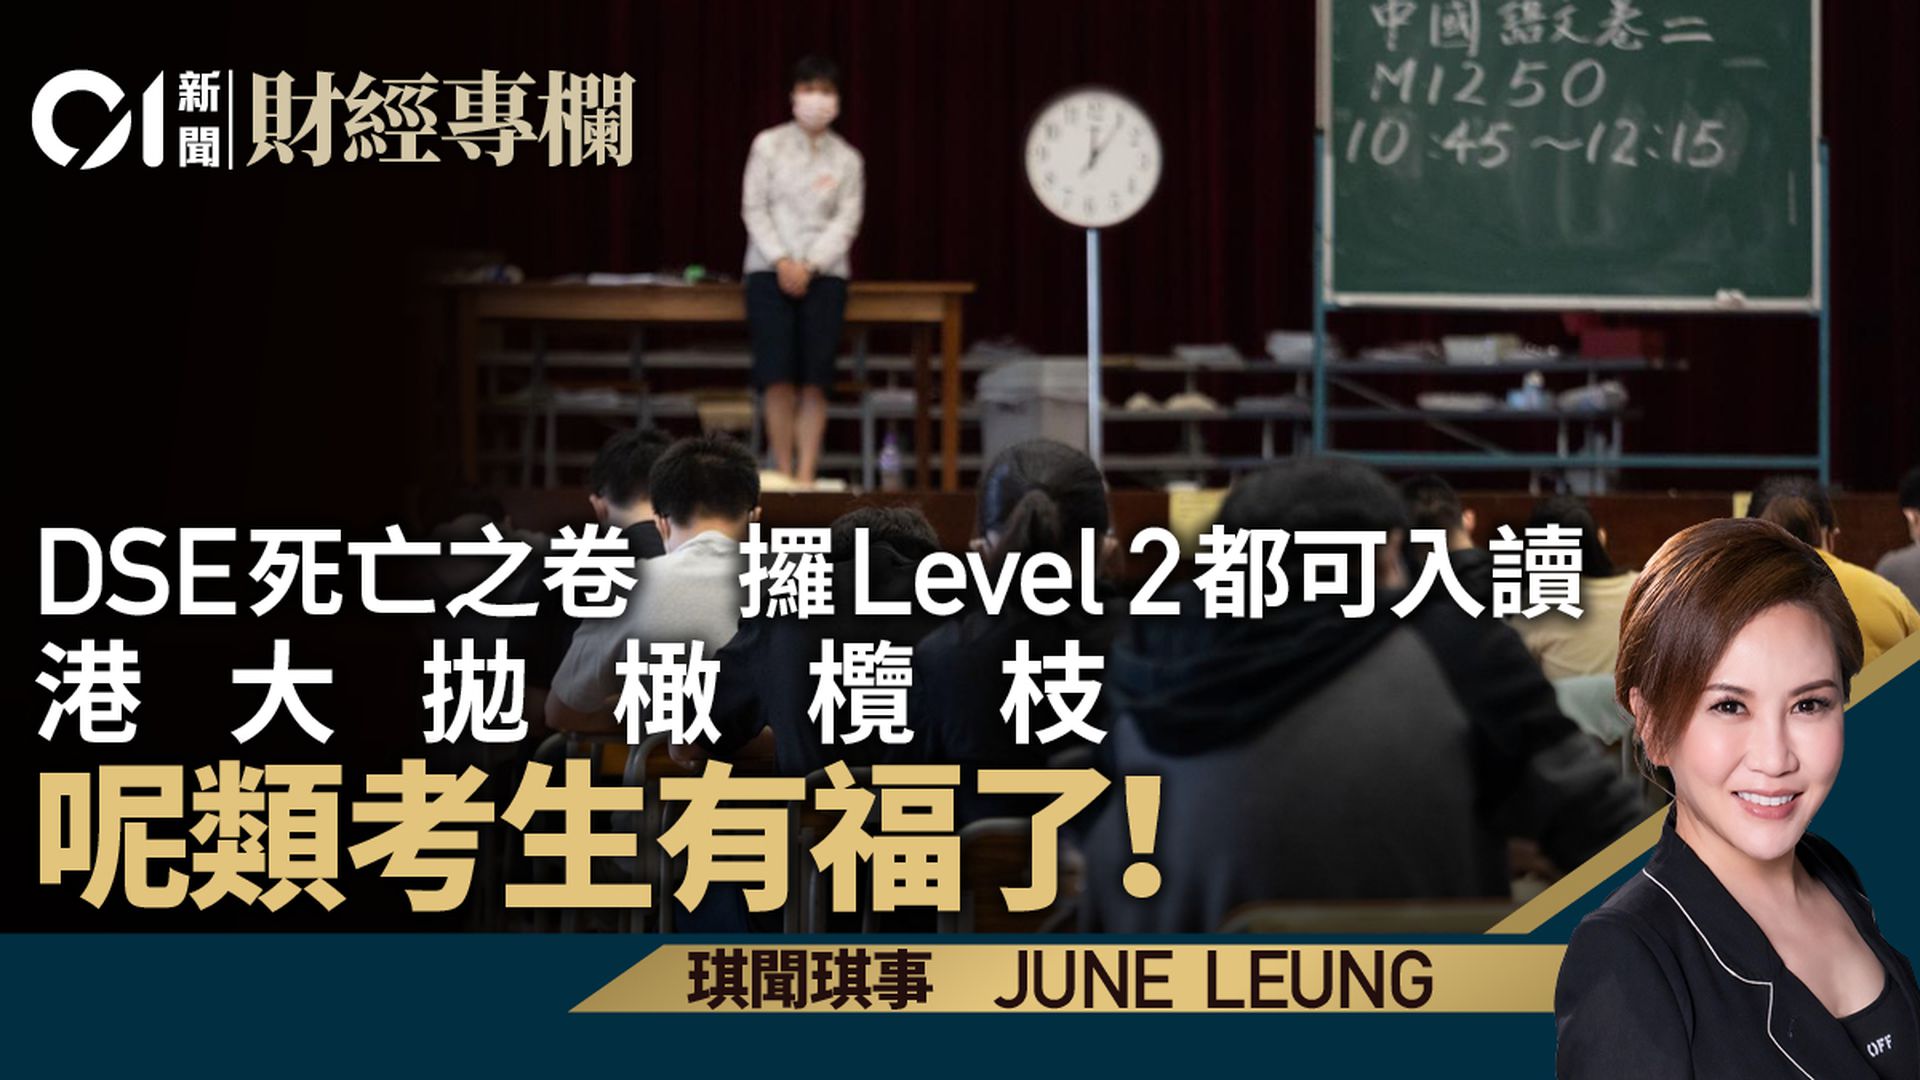 DSE中文level 2都可以入HKU　憂學生質素下降實過慮｜June Leung